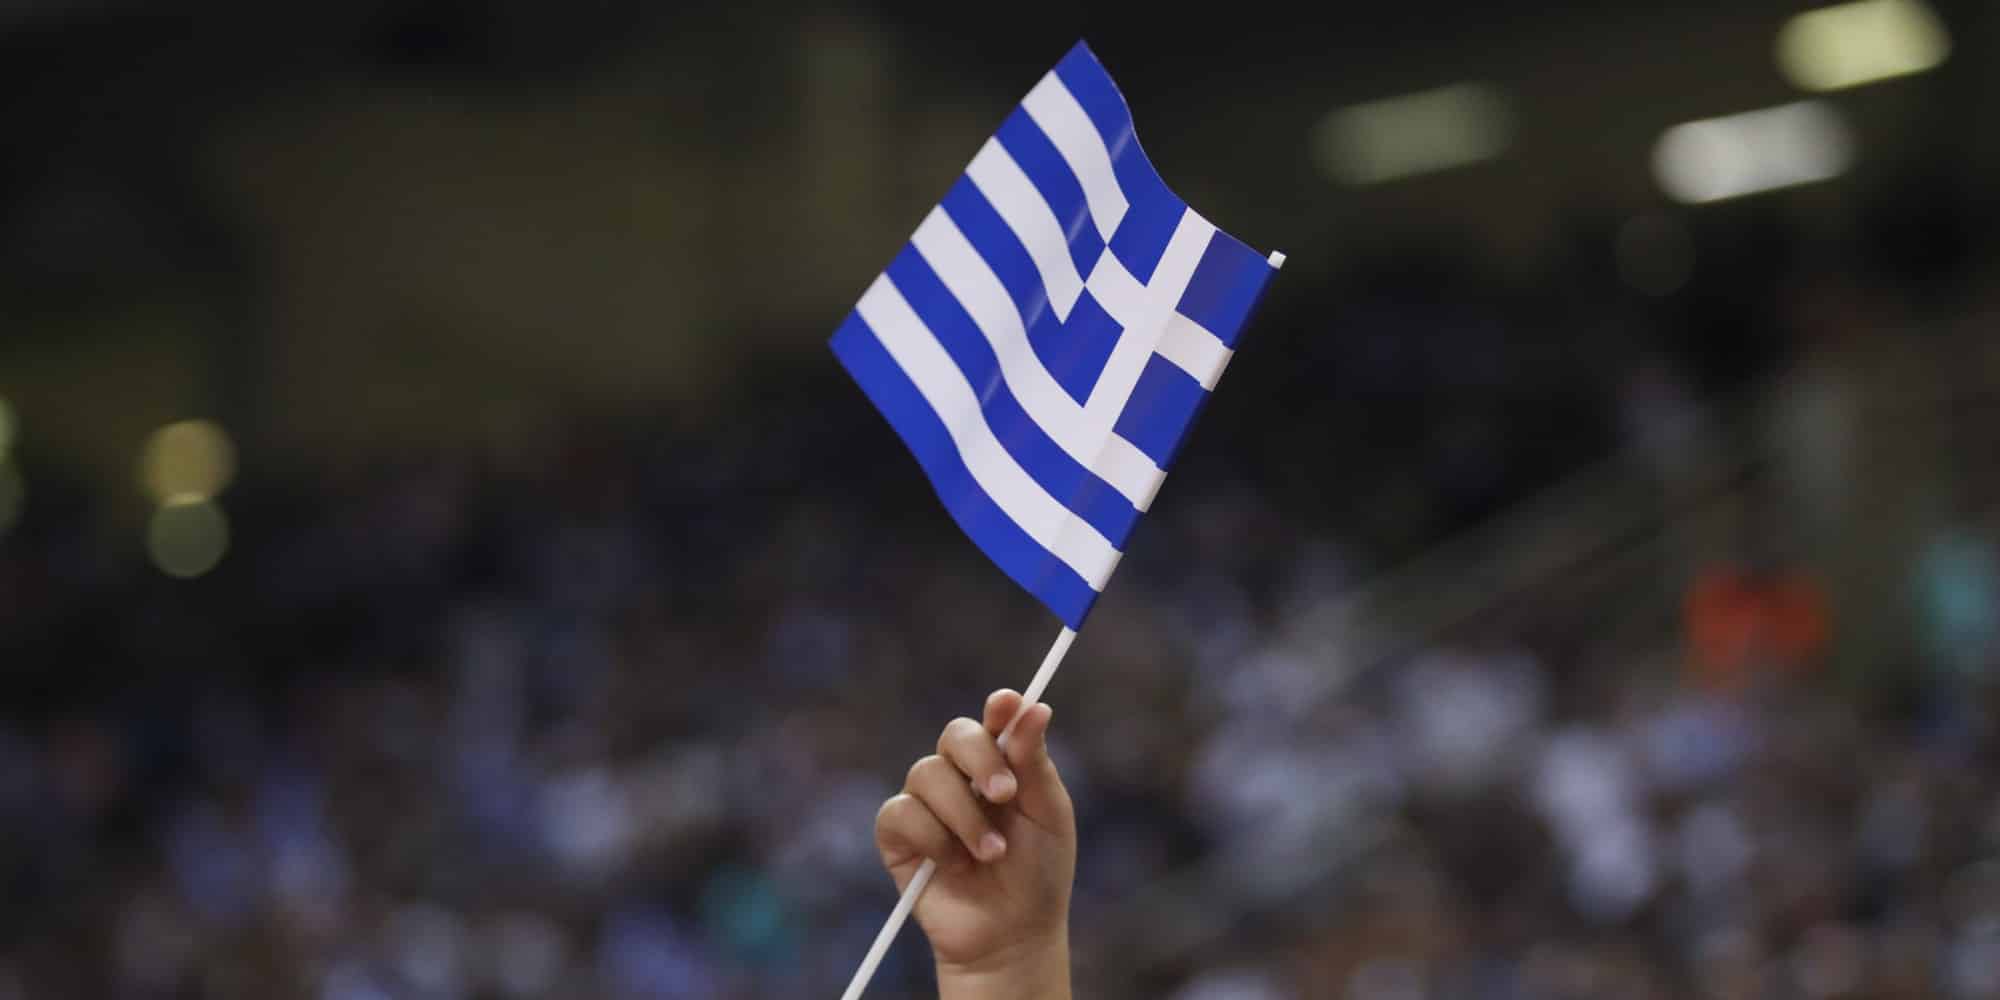 Η ελληνική σημαία